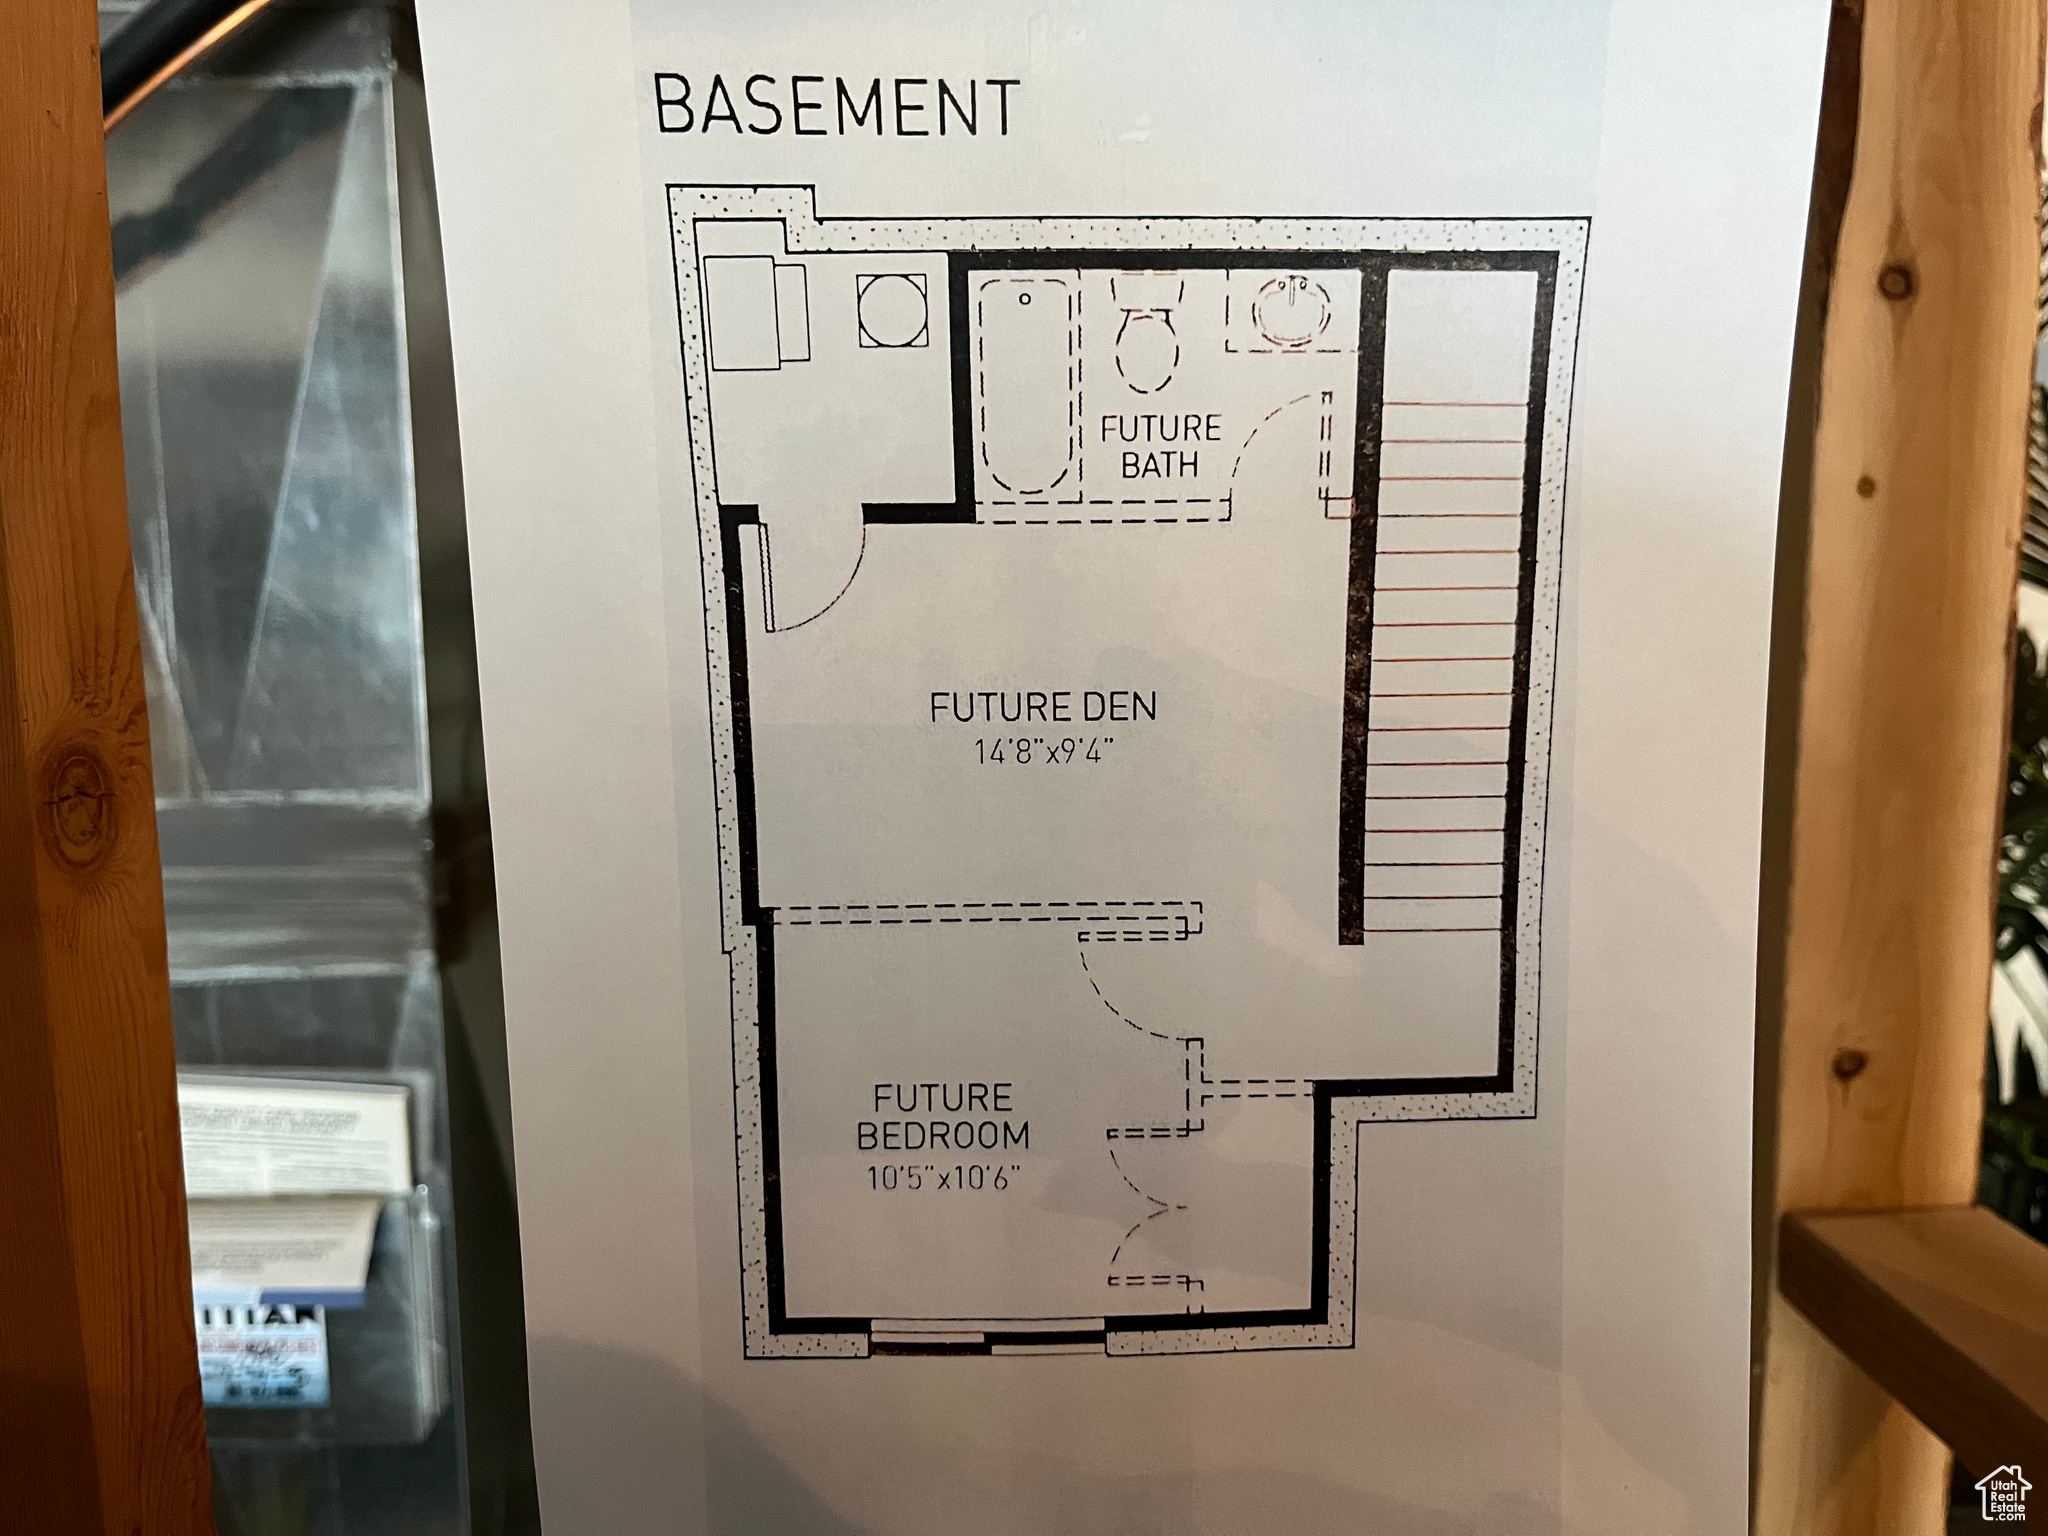 Optional floor Plan for basement